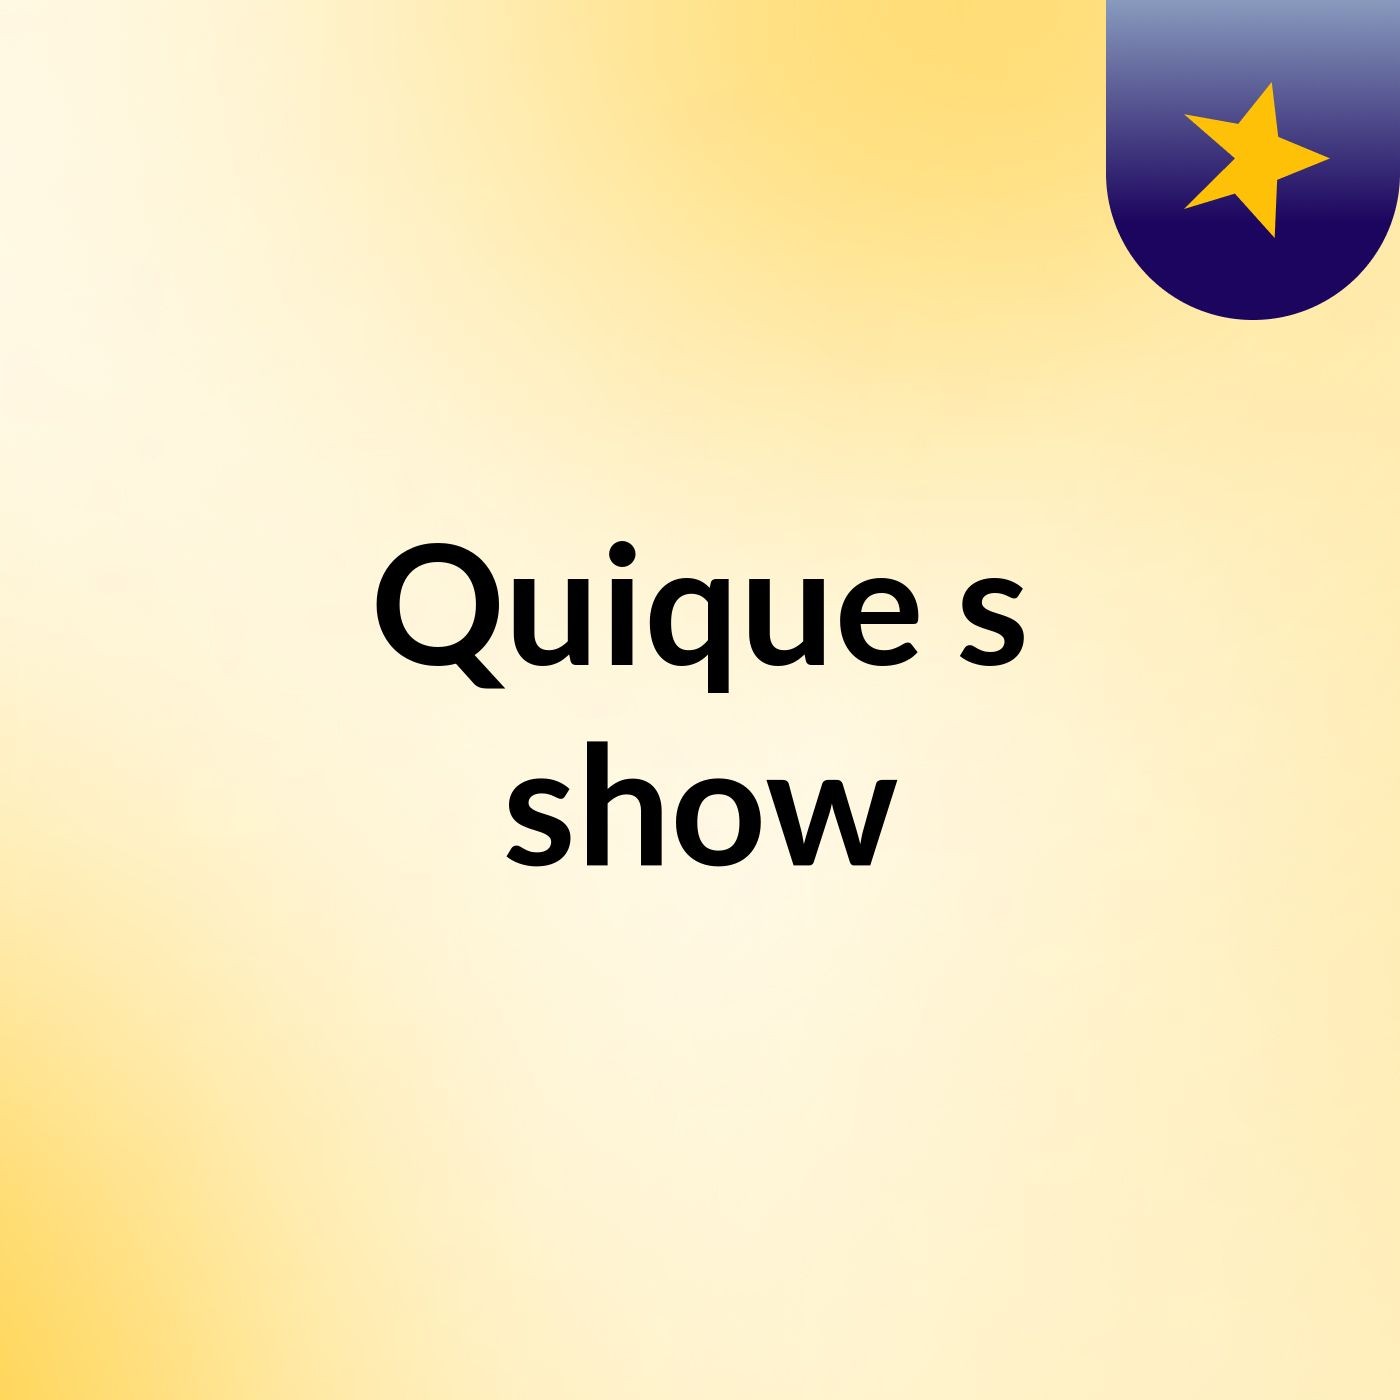 Quique's show